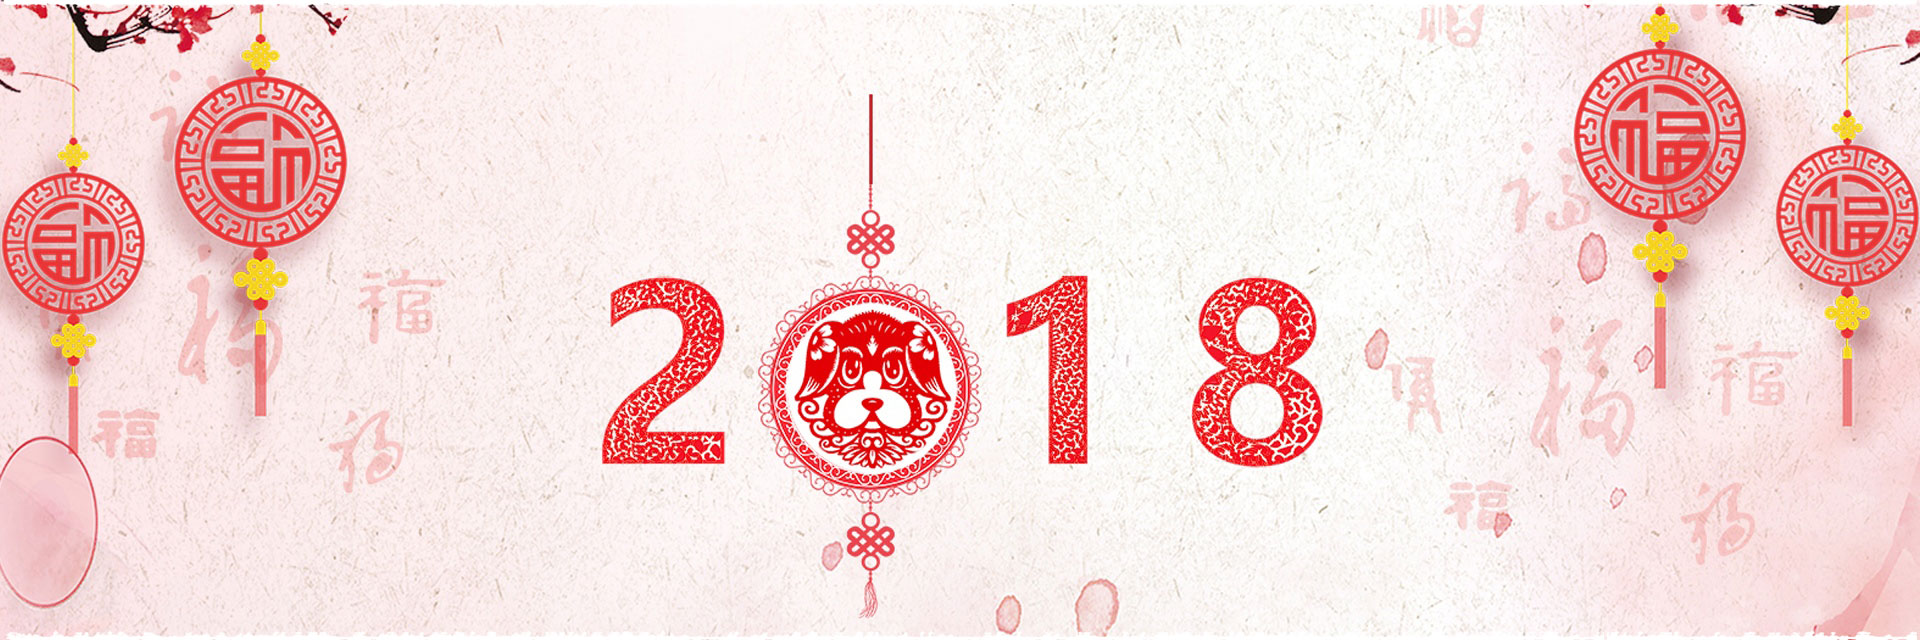 2018 : année du chien de terre.